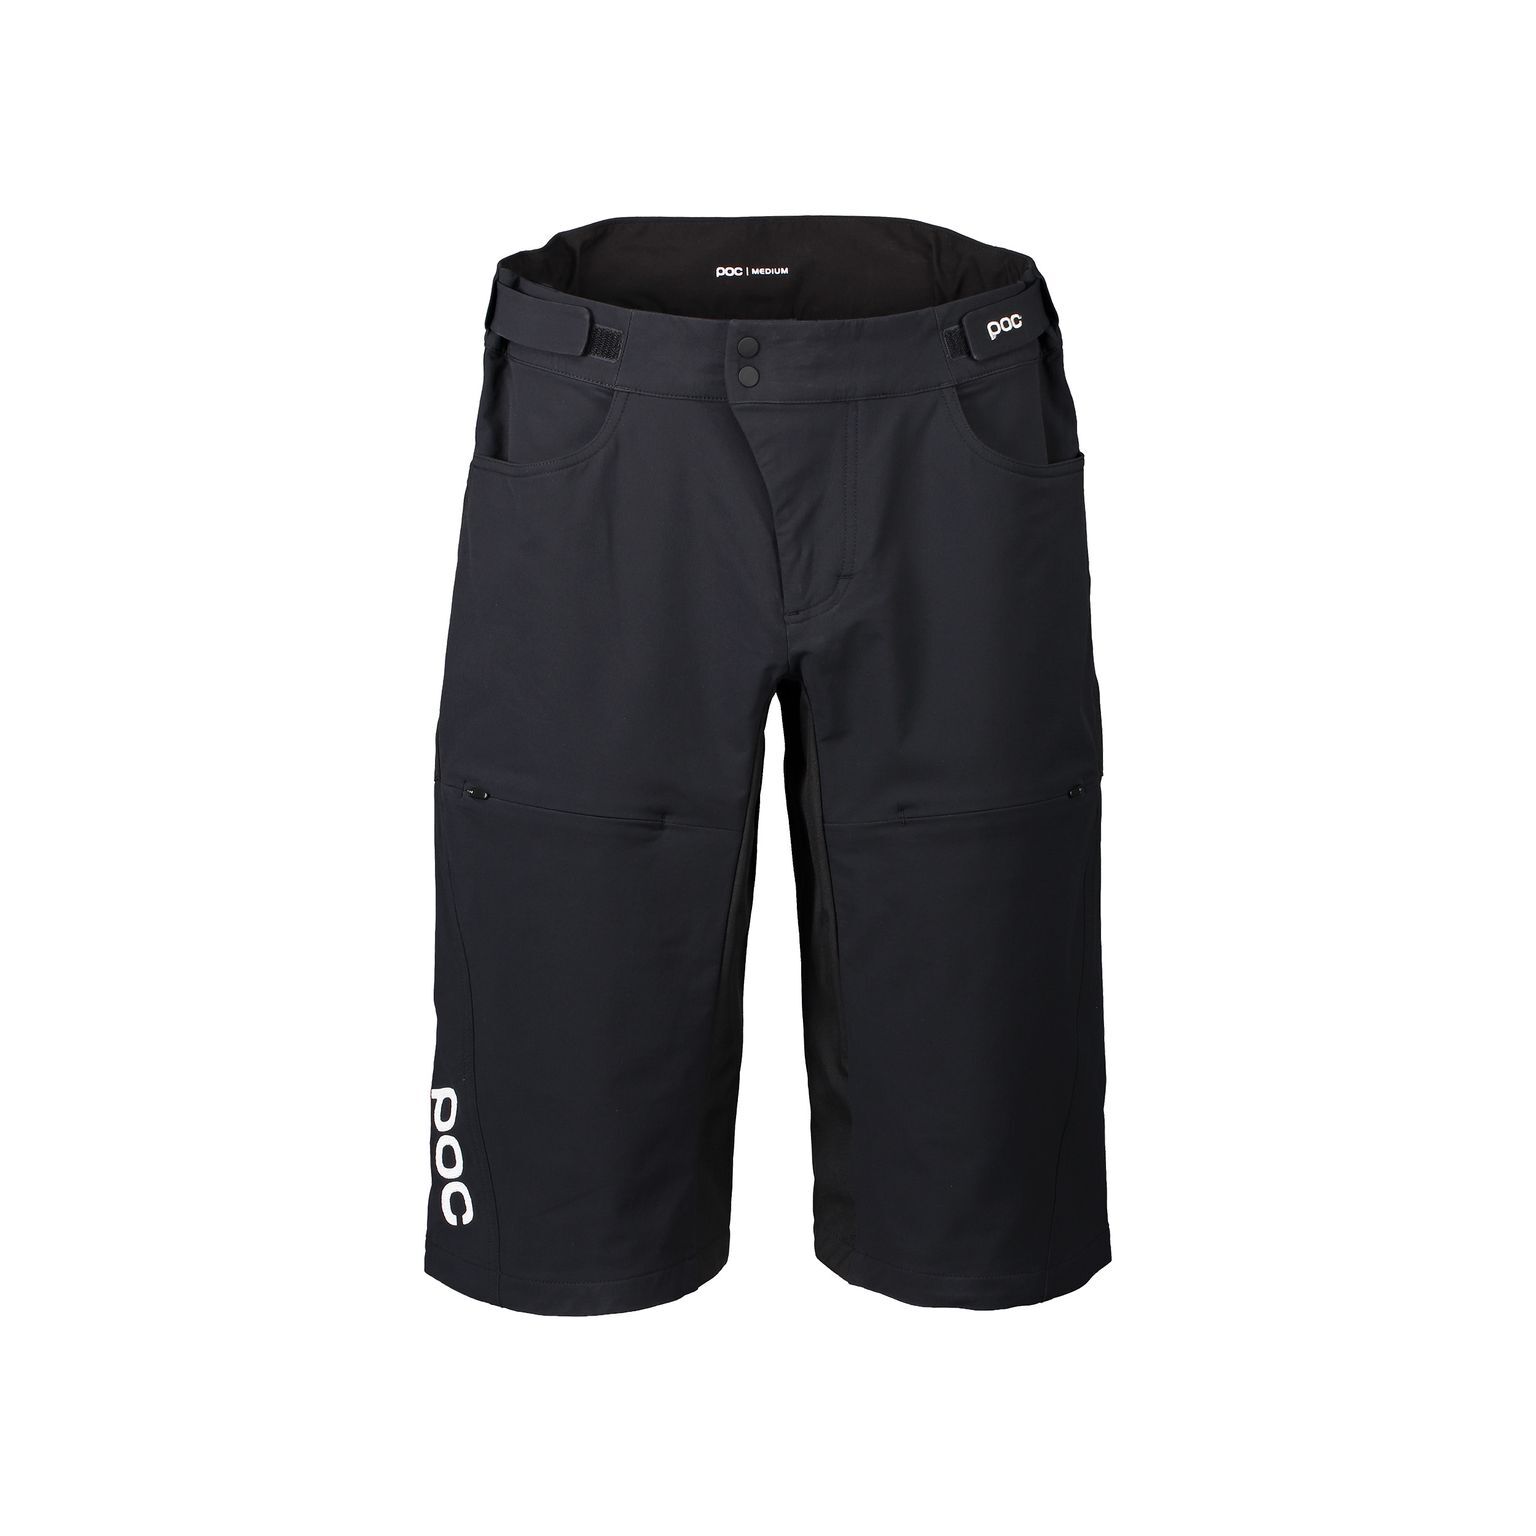 Poc Essential DH Shorts - Pantalones cortos MTB - Hombre